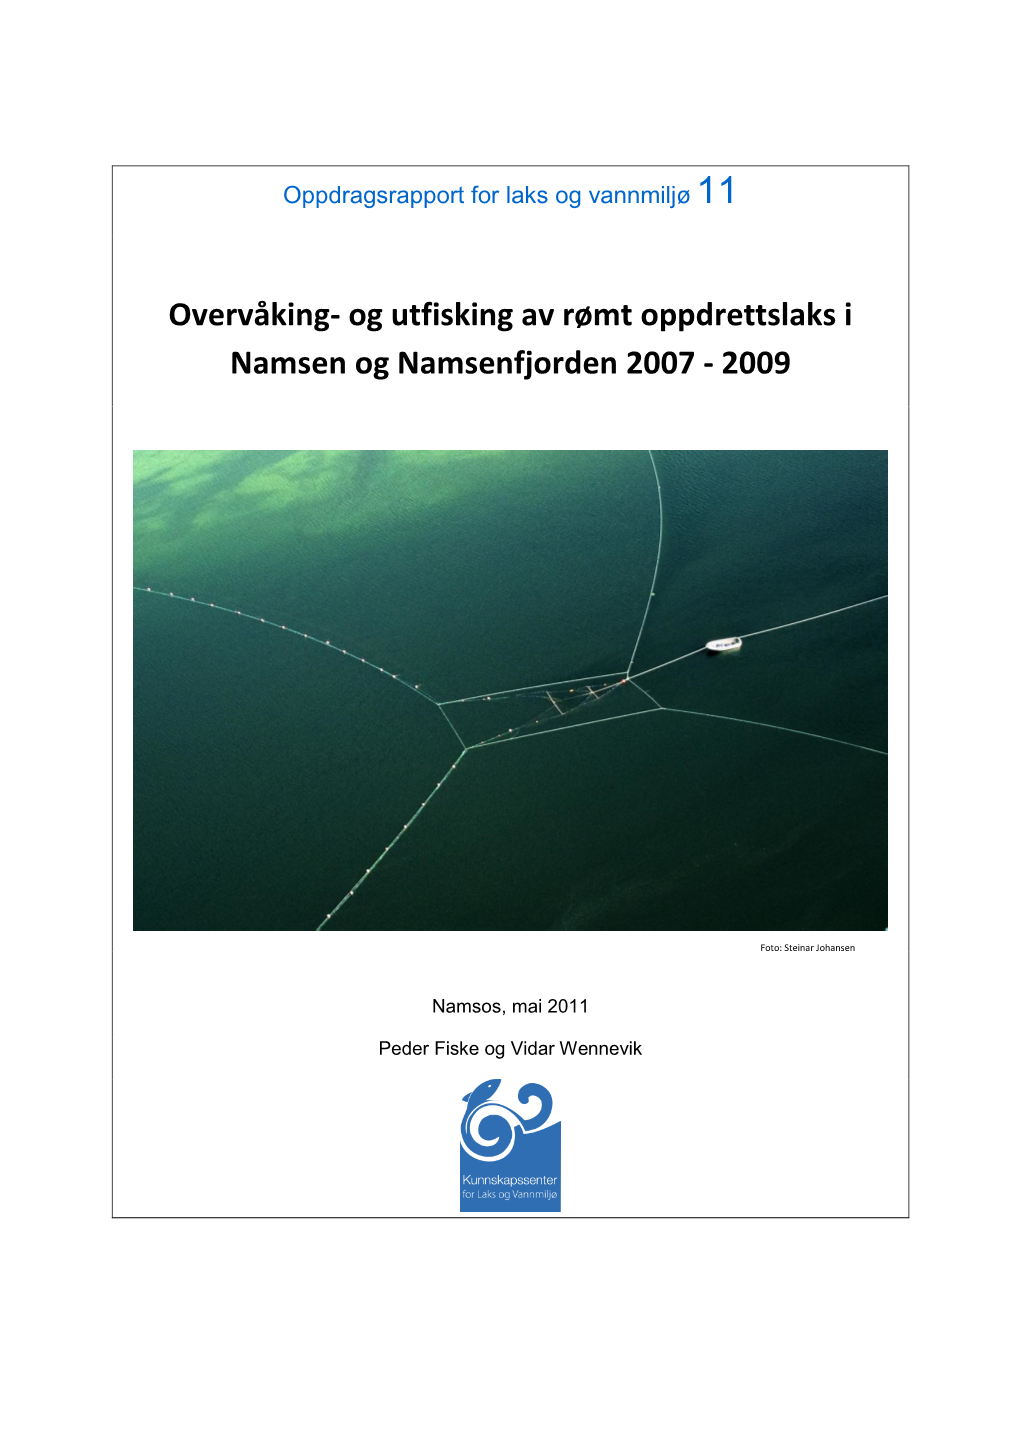 Overvåking- Og Utfisking Av Rømt Oppdrettslaks I Namsen Og Namsenfjorden 2007 - 2009